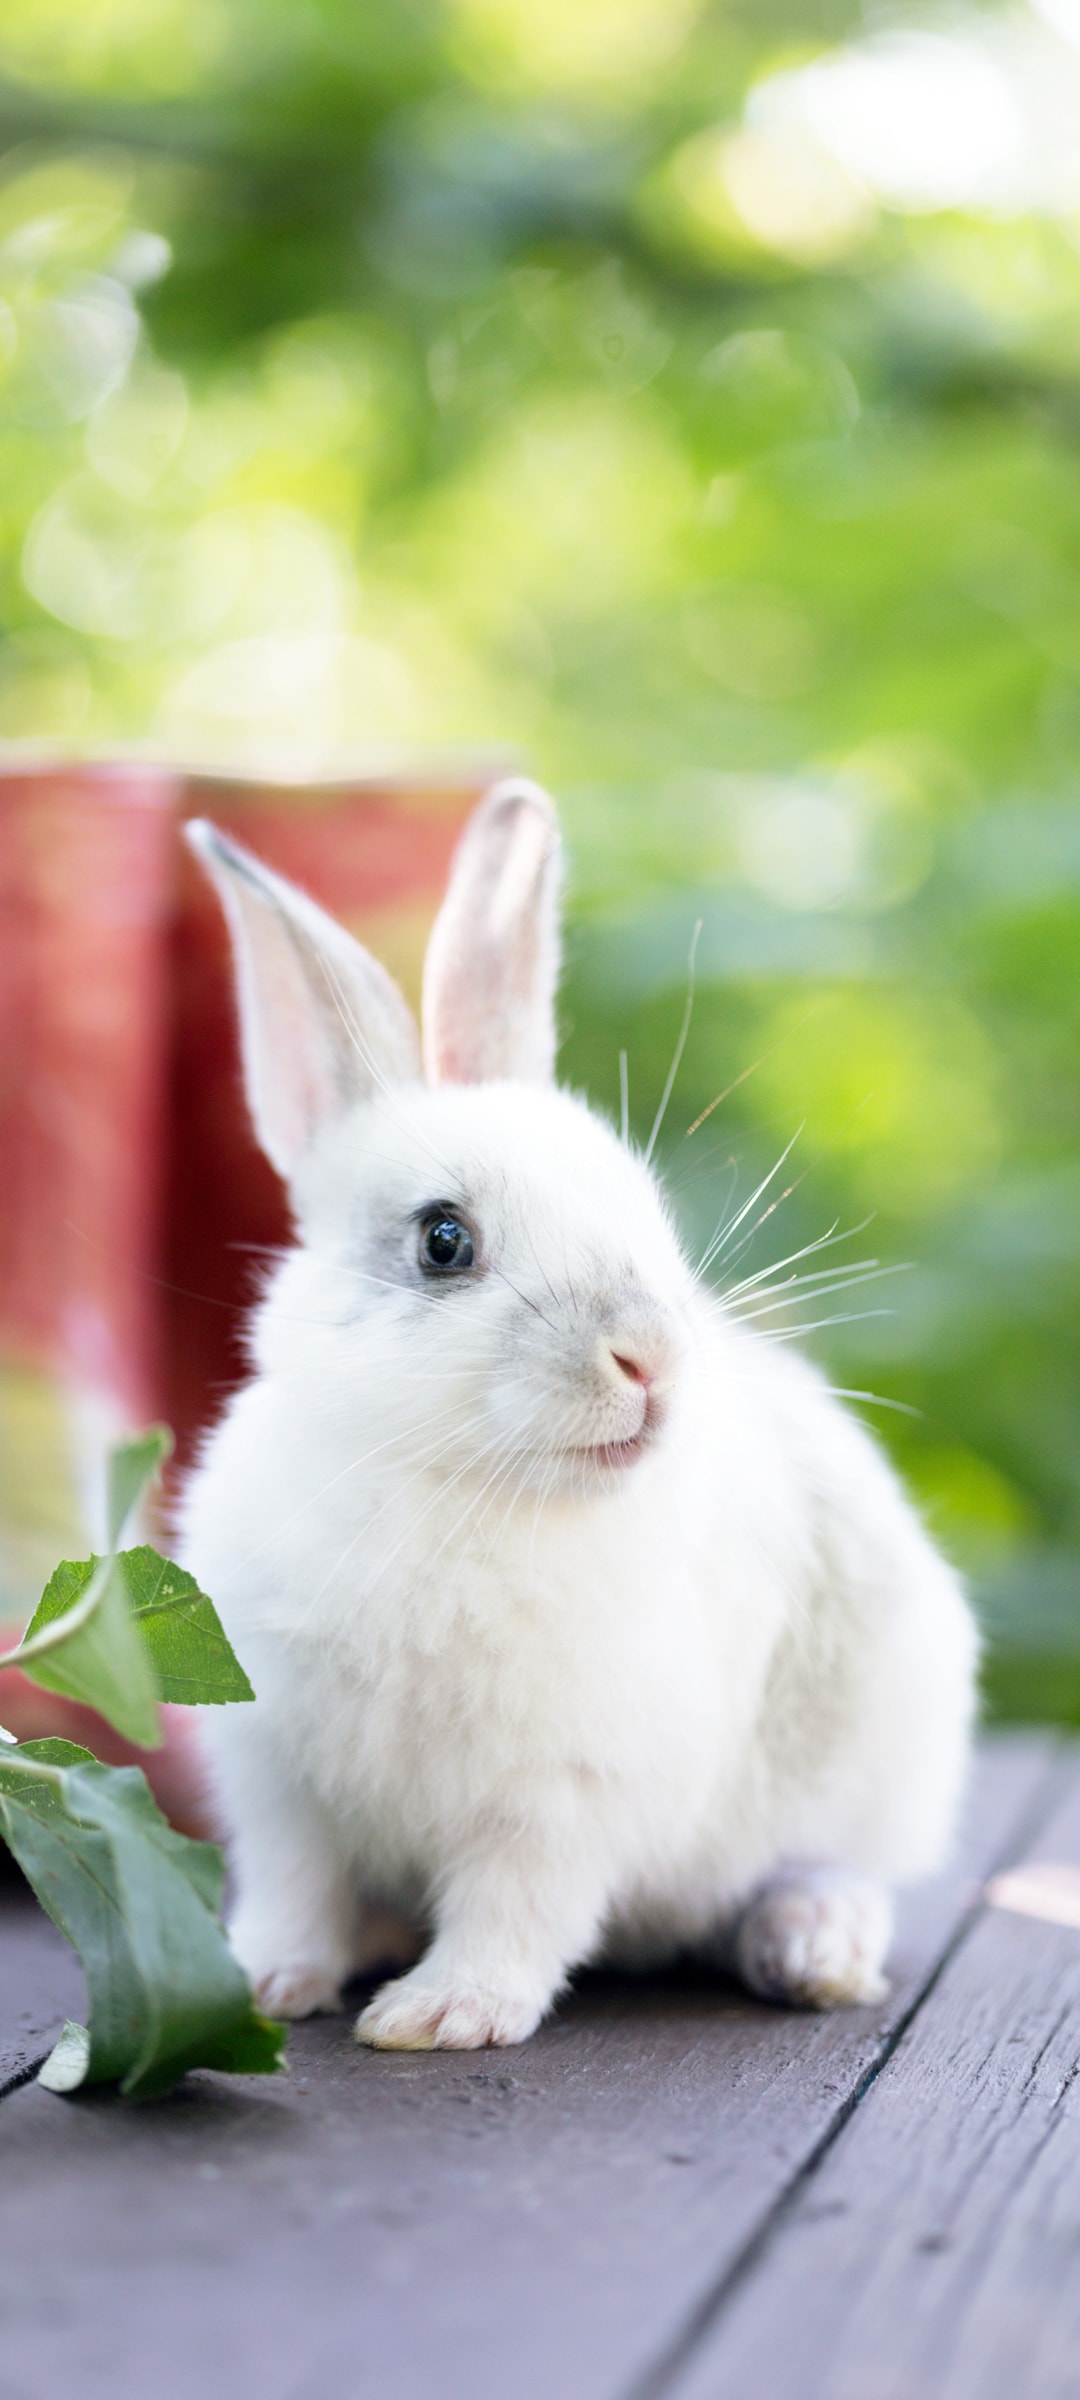 小兔子又白又圆毛茸茸